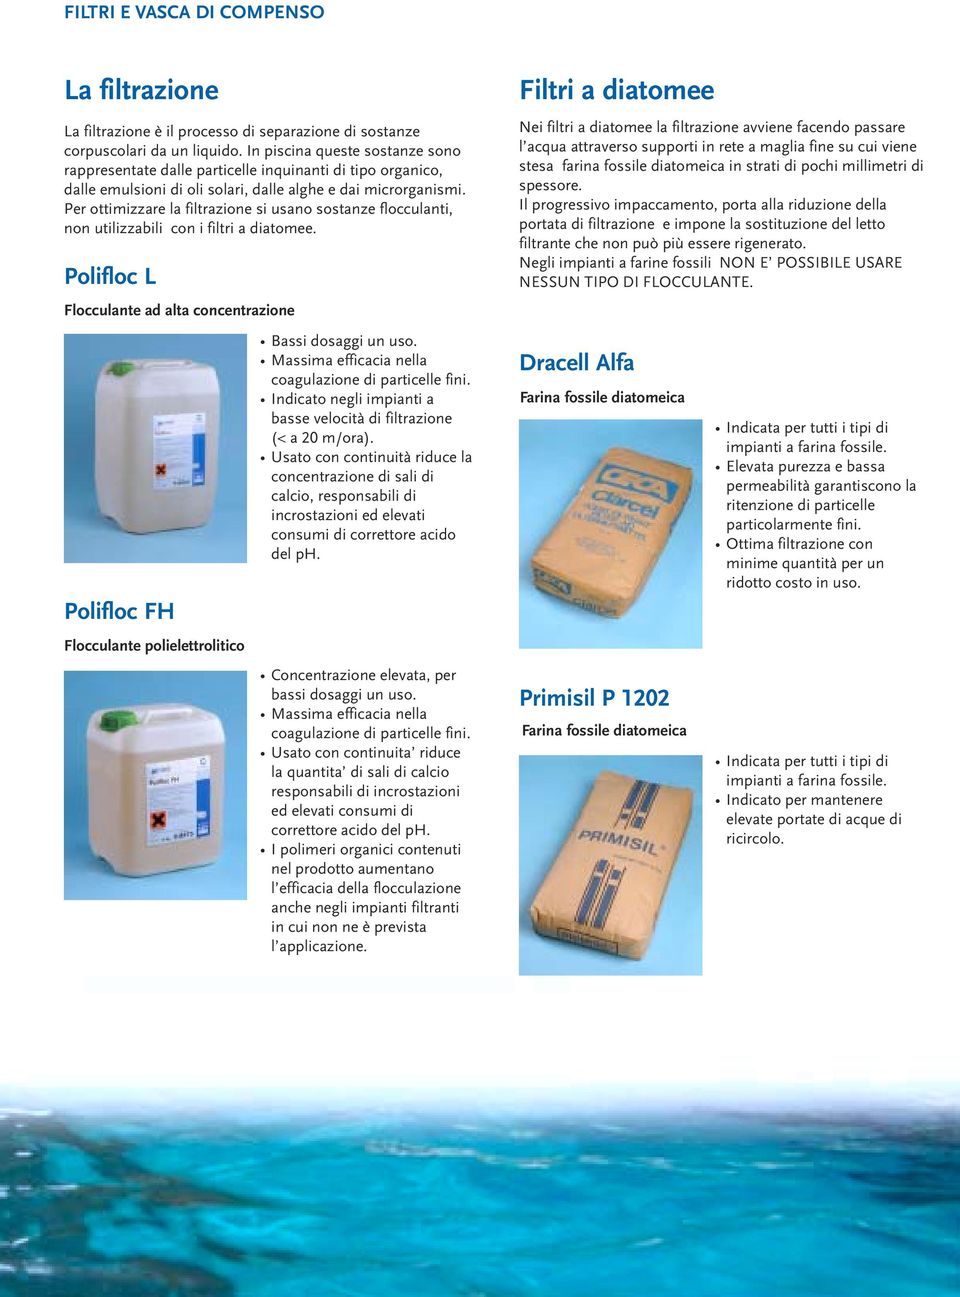 Per ottimizzare la filtrazione si usano sostanze flocculanti, non utilizzabili con i filtri a diatomee.